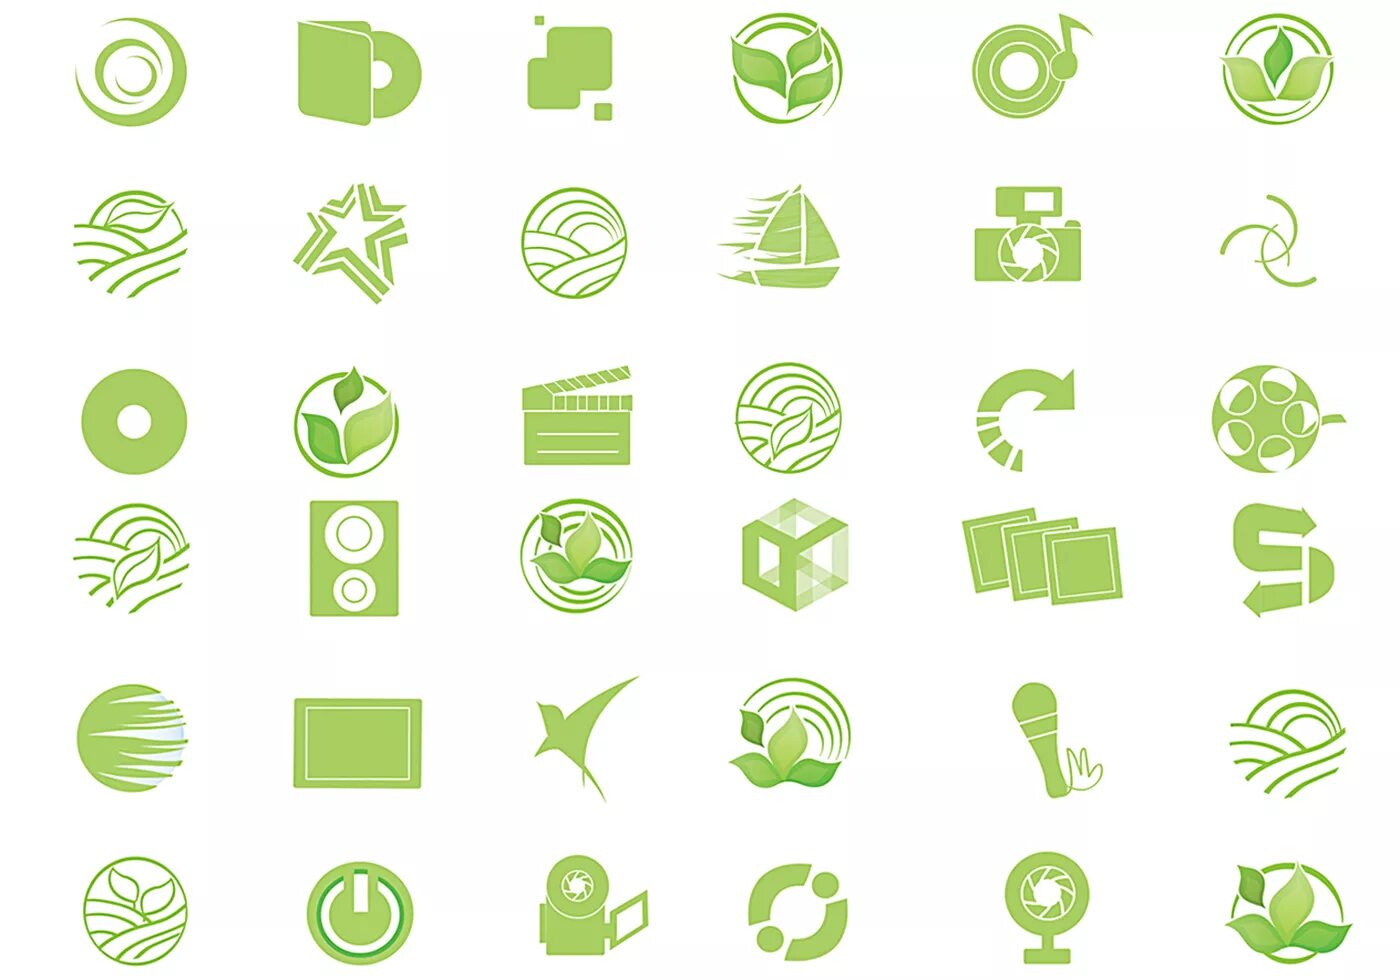 Green icon. Зеленые иконки. Иконки приложения в зелёных тонах. Набор зеленых иконок. Иконки для приложений в салатовом цвете.